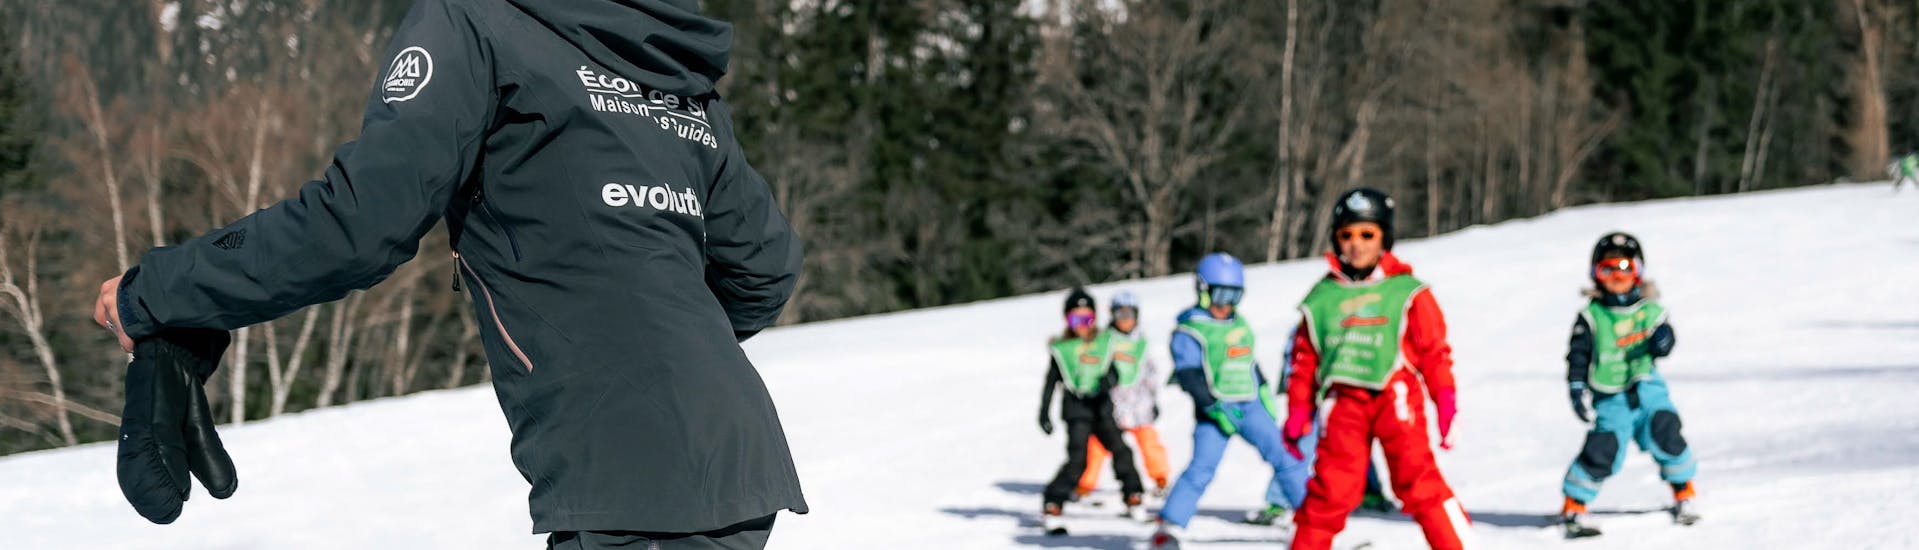 Clases de esquí para niños (6-12 años) en Grands Montets.